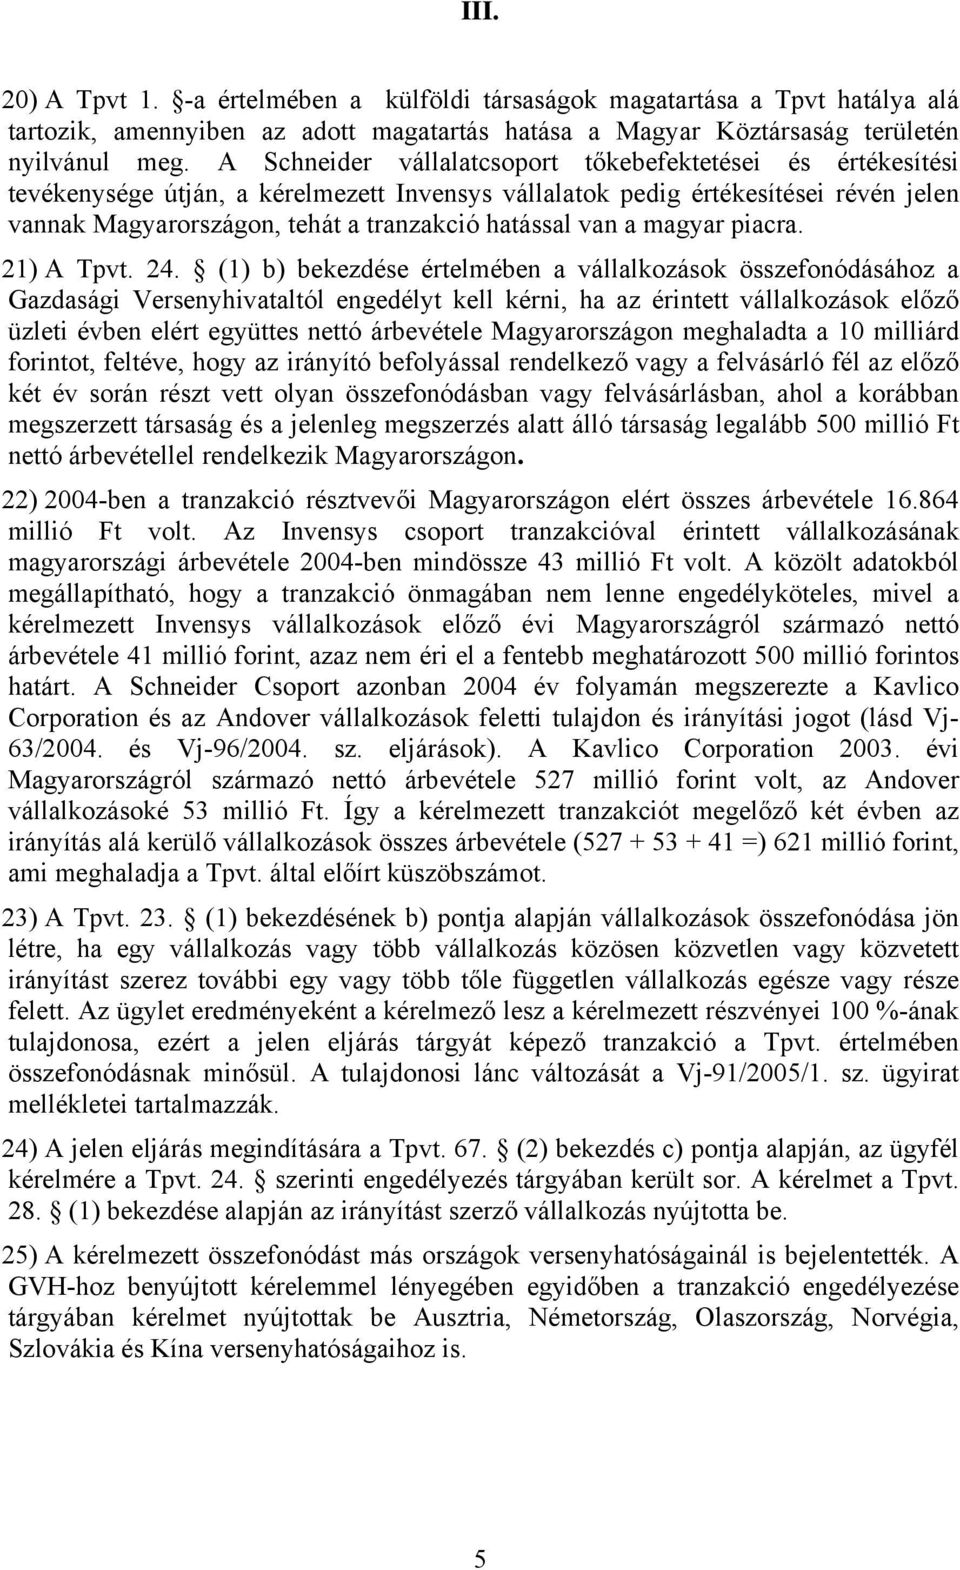 van a magyar piacra. 21) A Tpvt. 24.